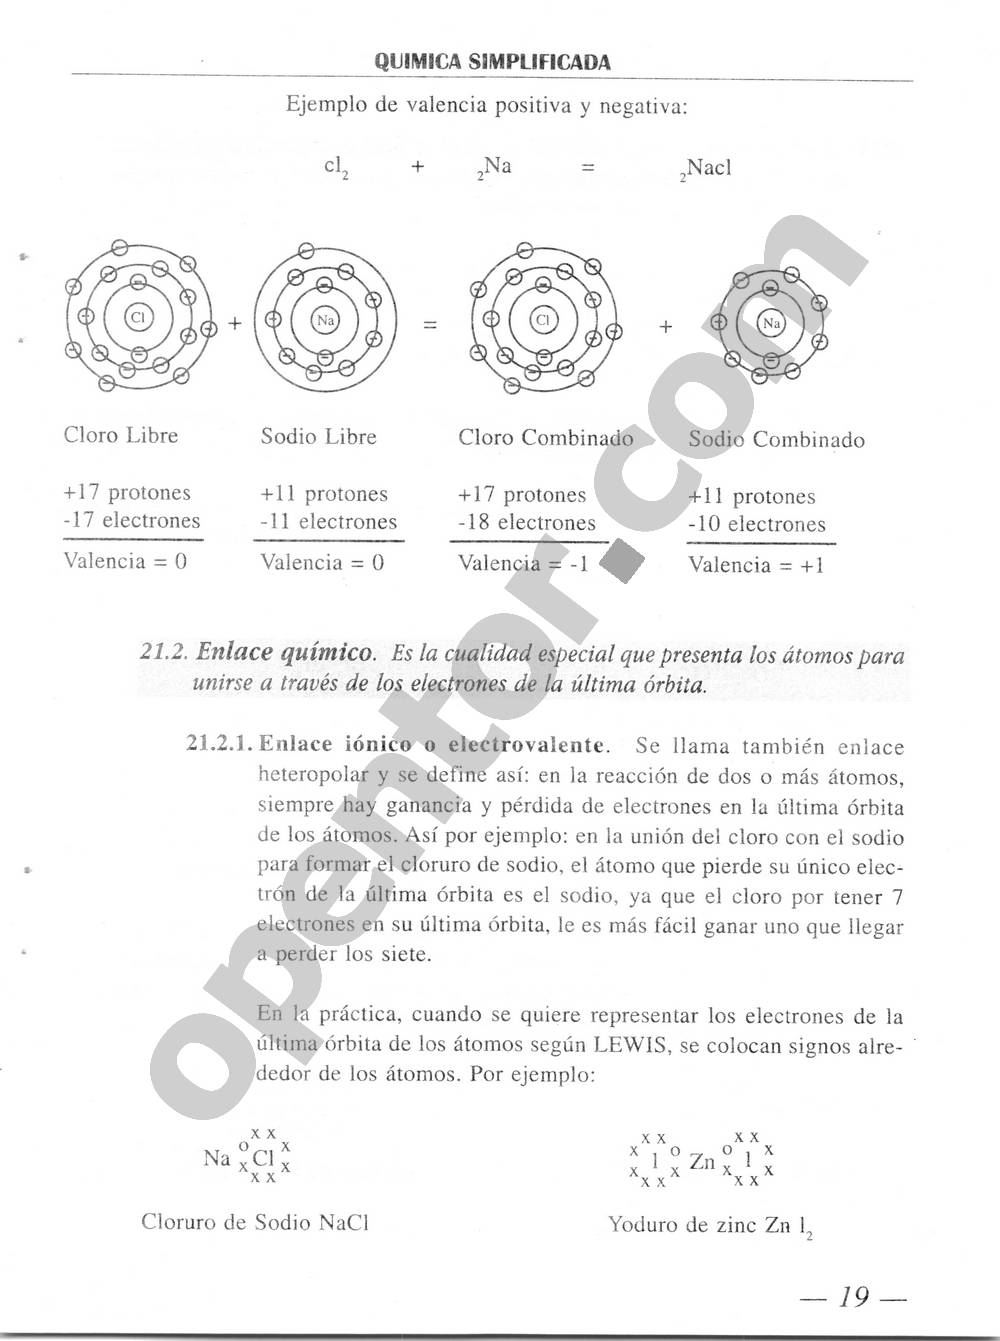 Química Simplificada de Diómedes Solano - Página 19